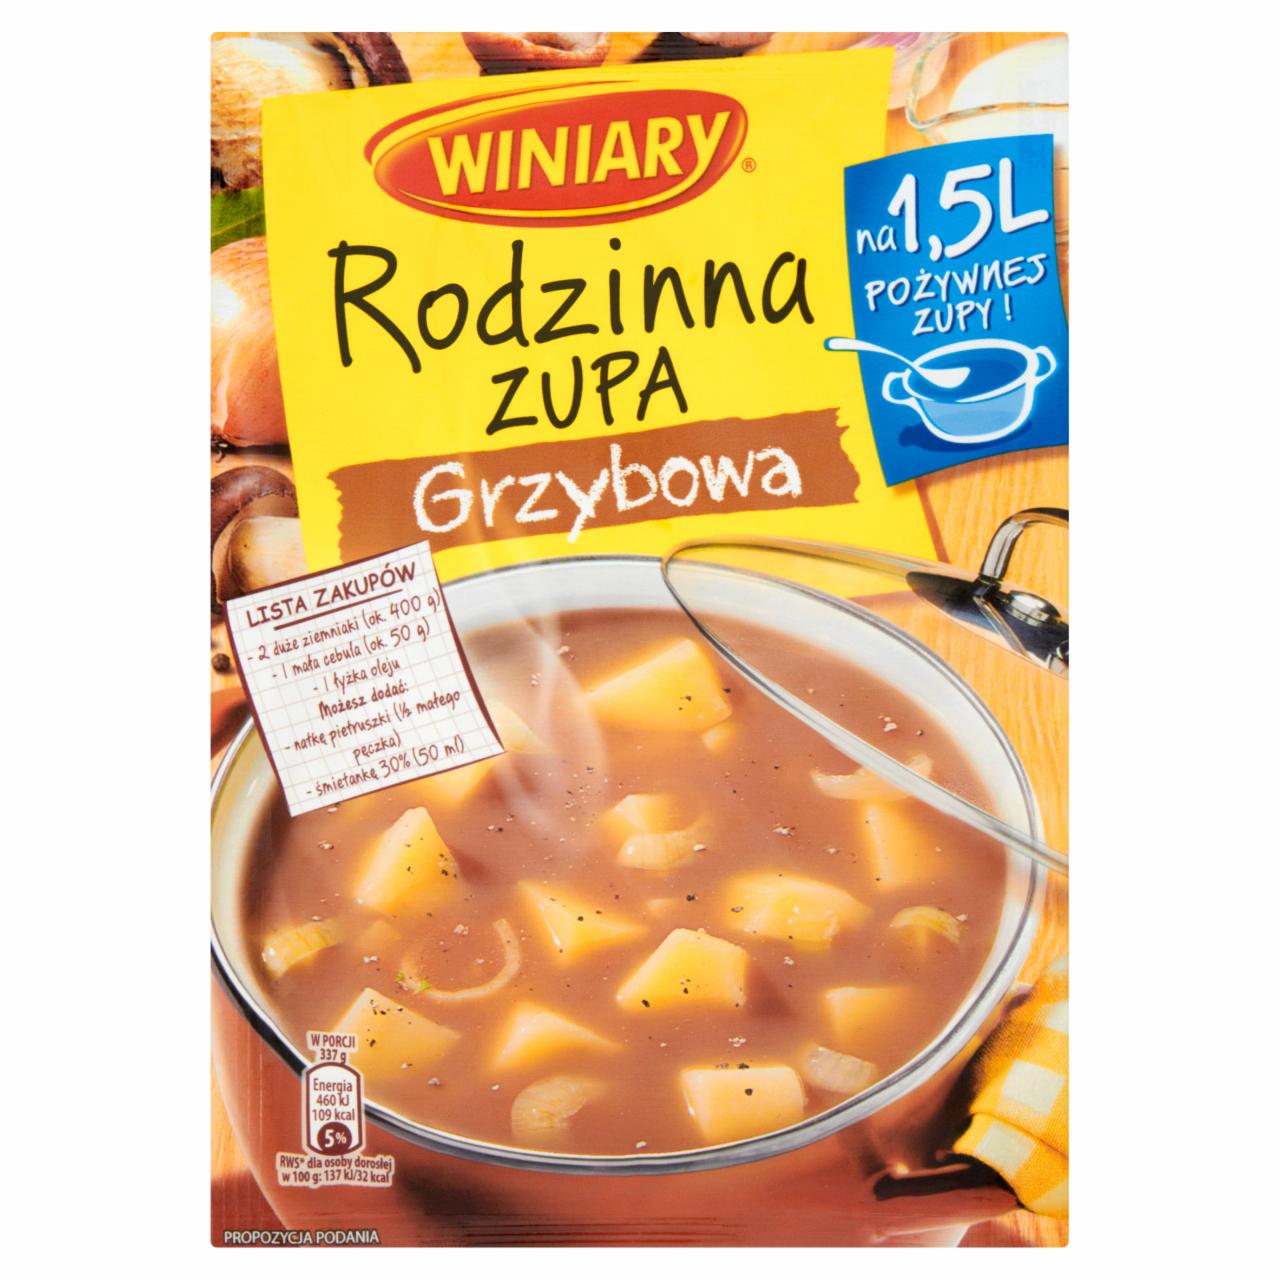 Zdjęcia - Winiary Rodzinna zupa Grzybowa 70 g